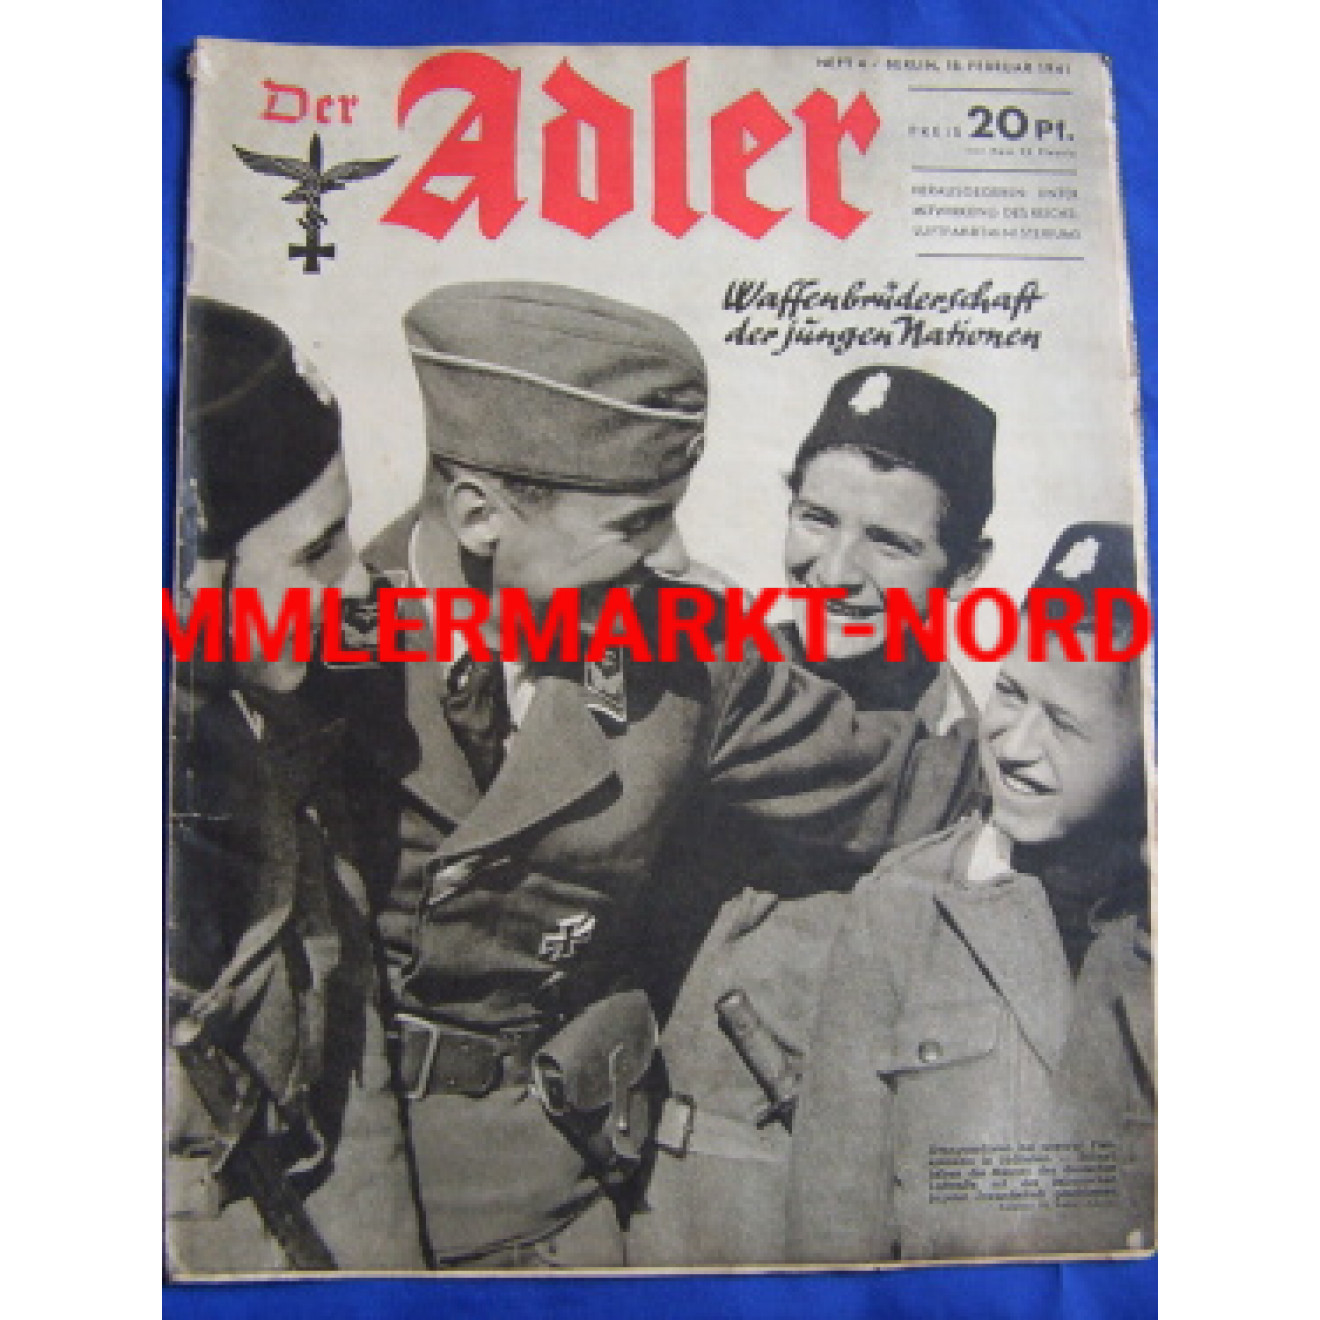 Der Adler, 18. February 1941